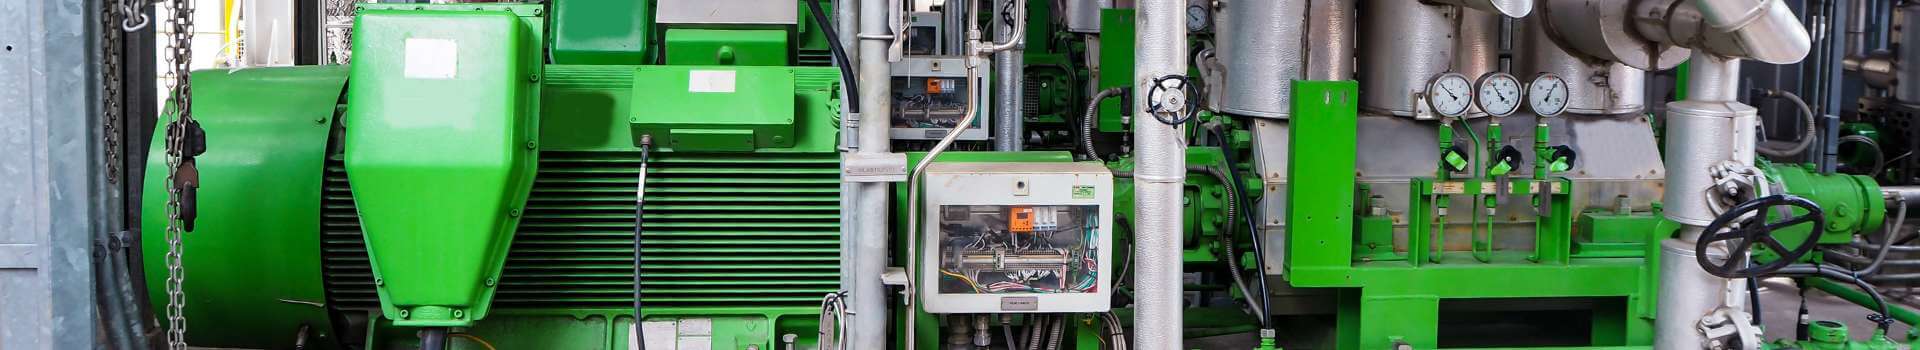 Vibration monitoring for centrifugal pumps increases pump lifespan